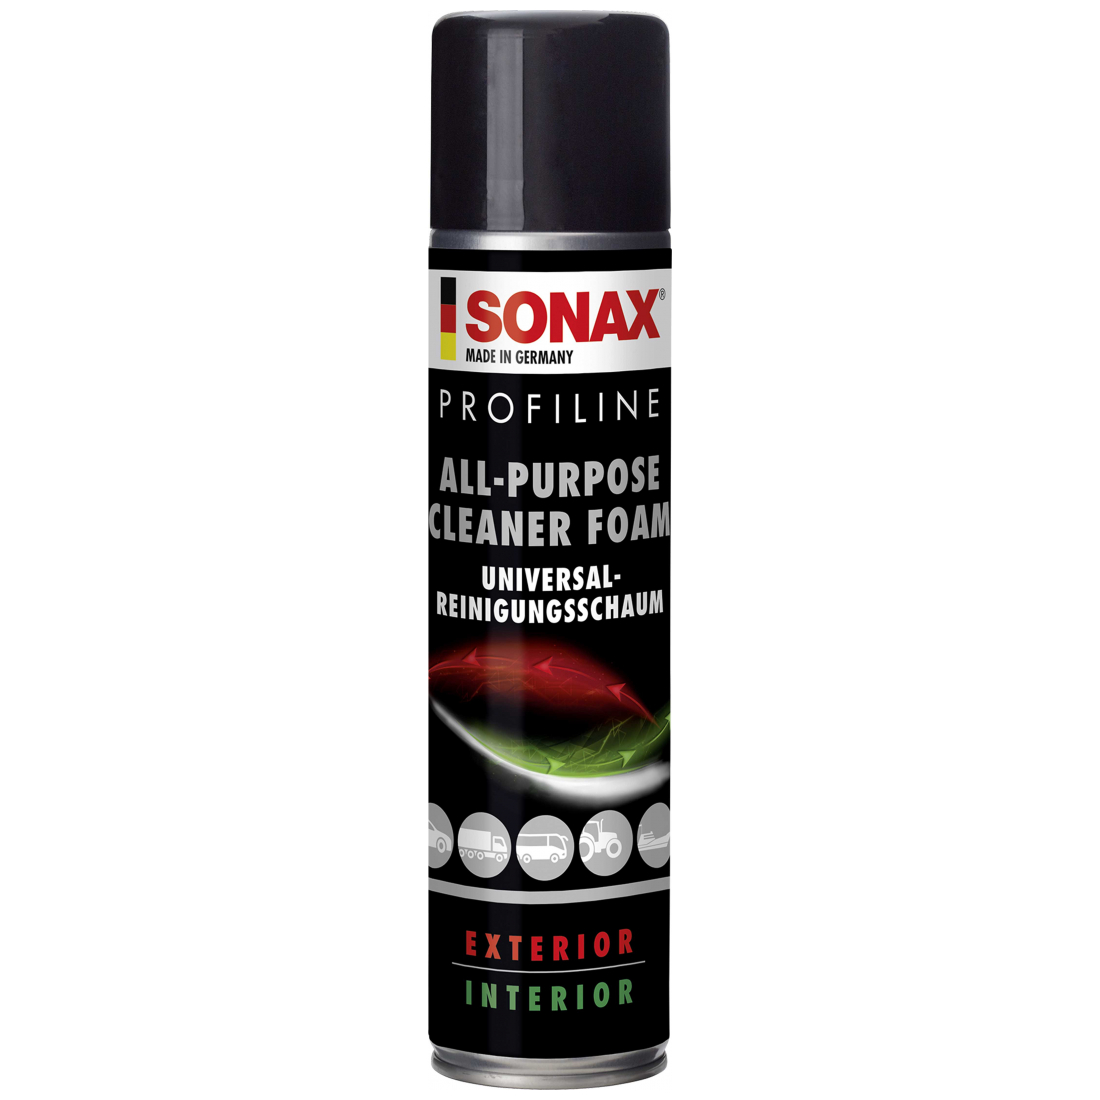 SONAX PROFILINE All-Purpose-Cleaner Foam (Universalreinigungsschaum) 400ml